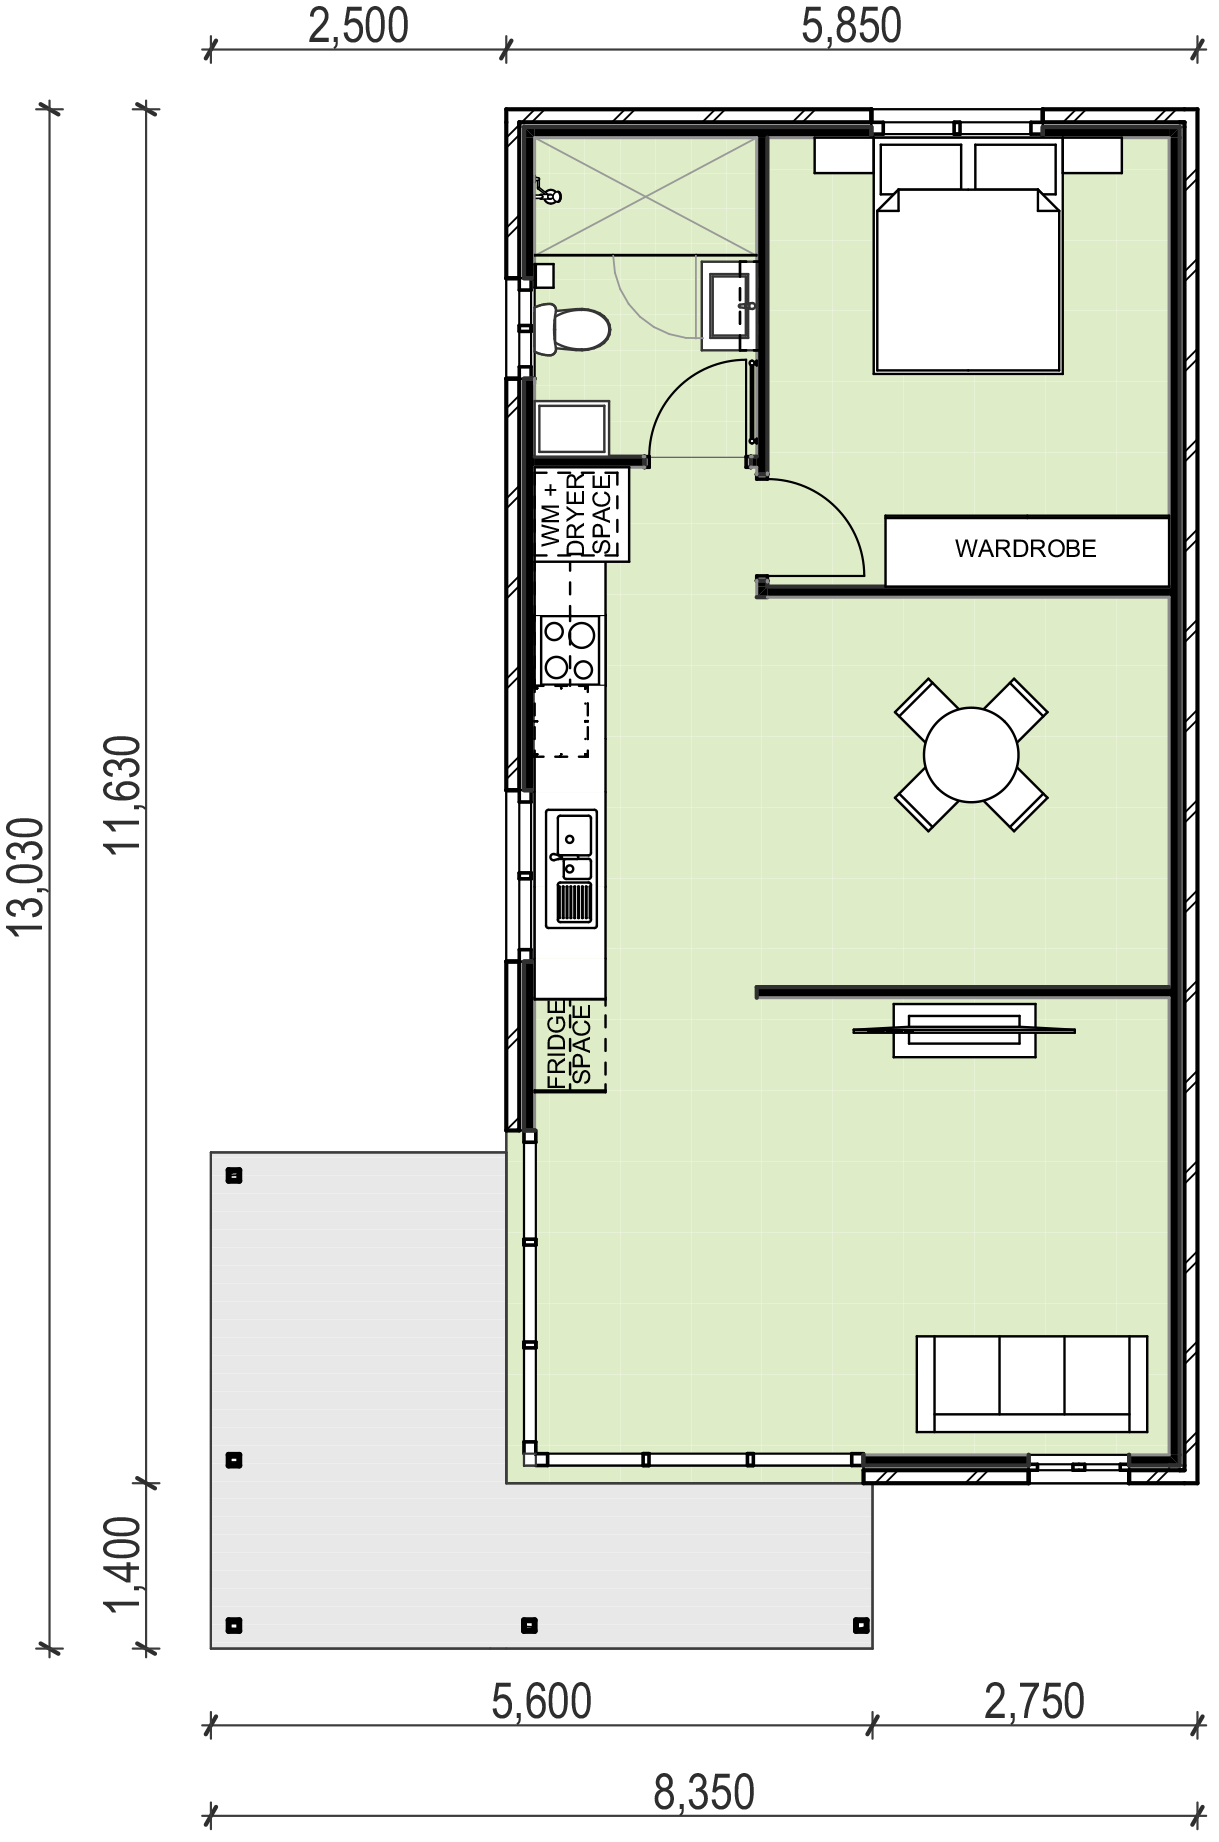 1 bedroom granny flat floor plan design